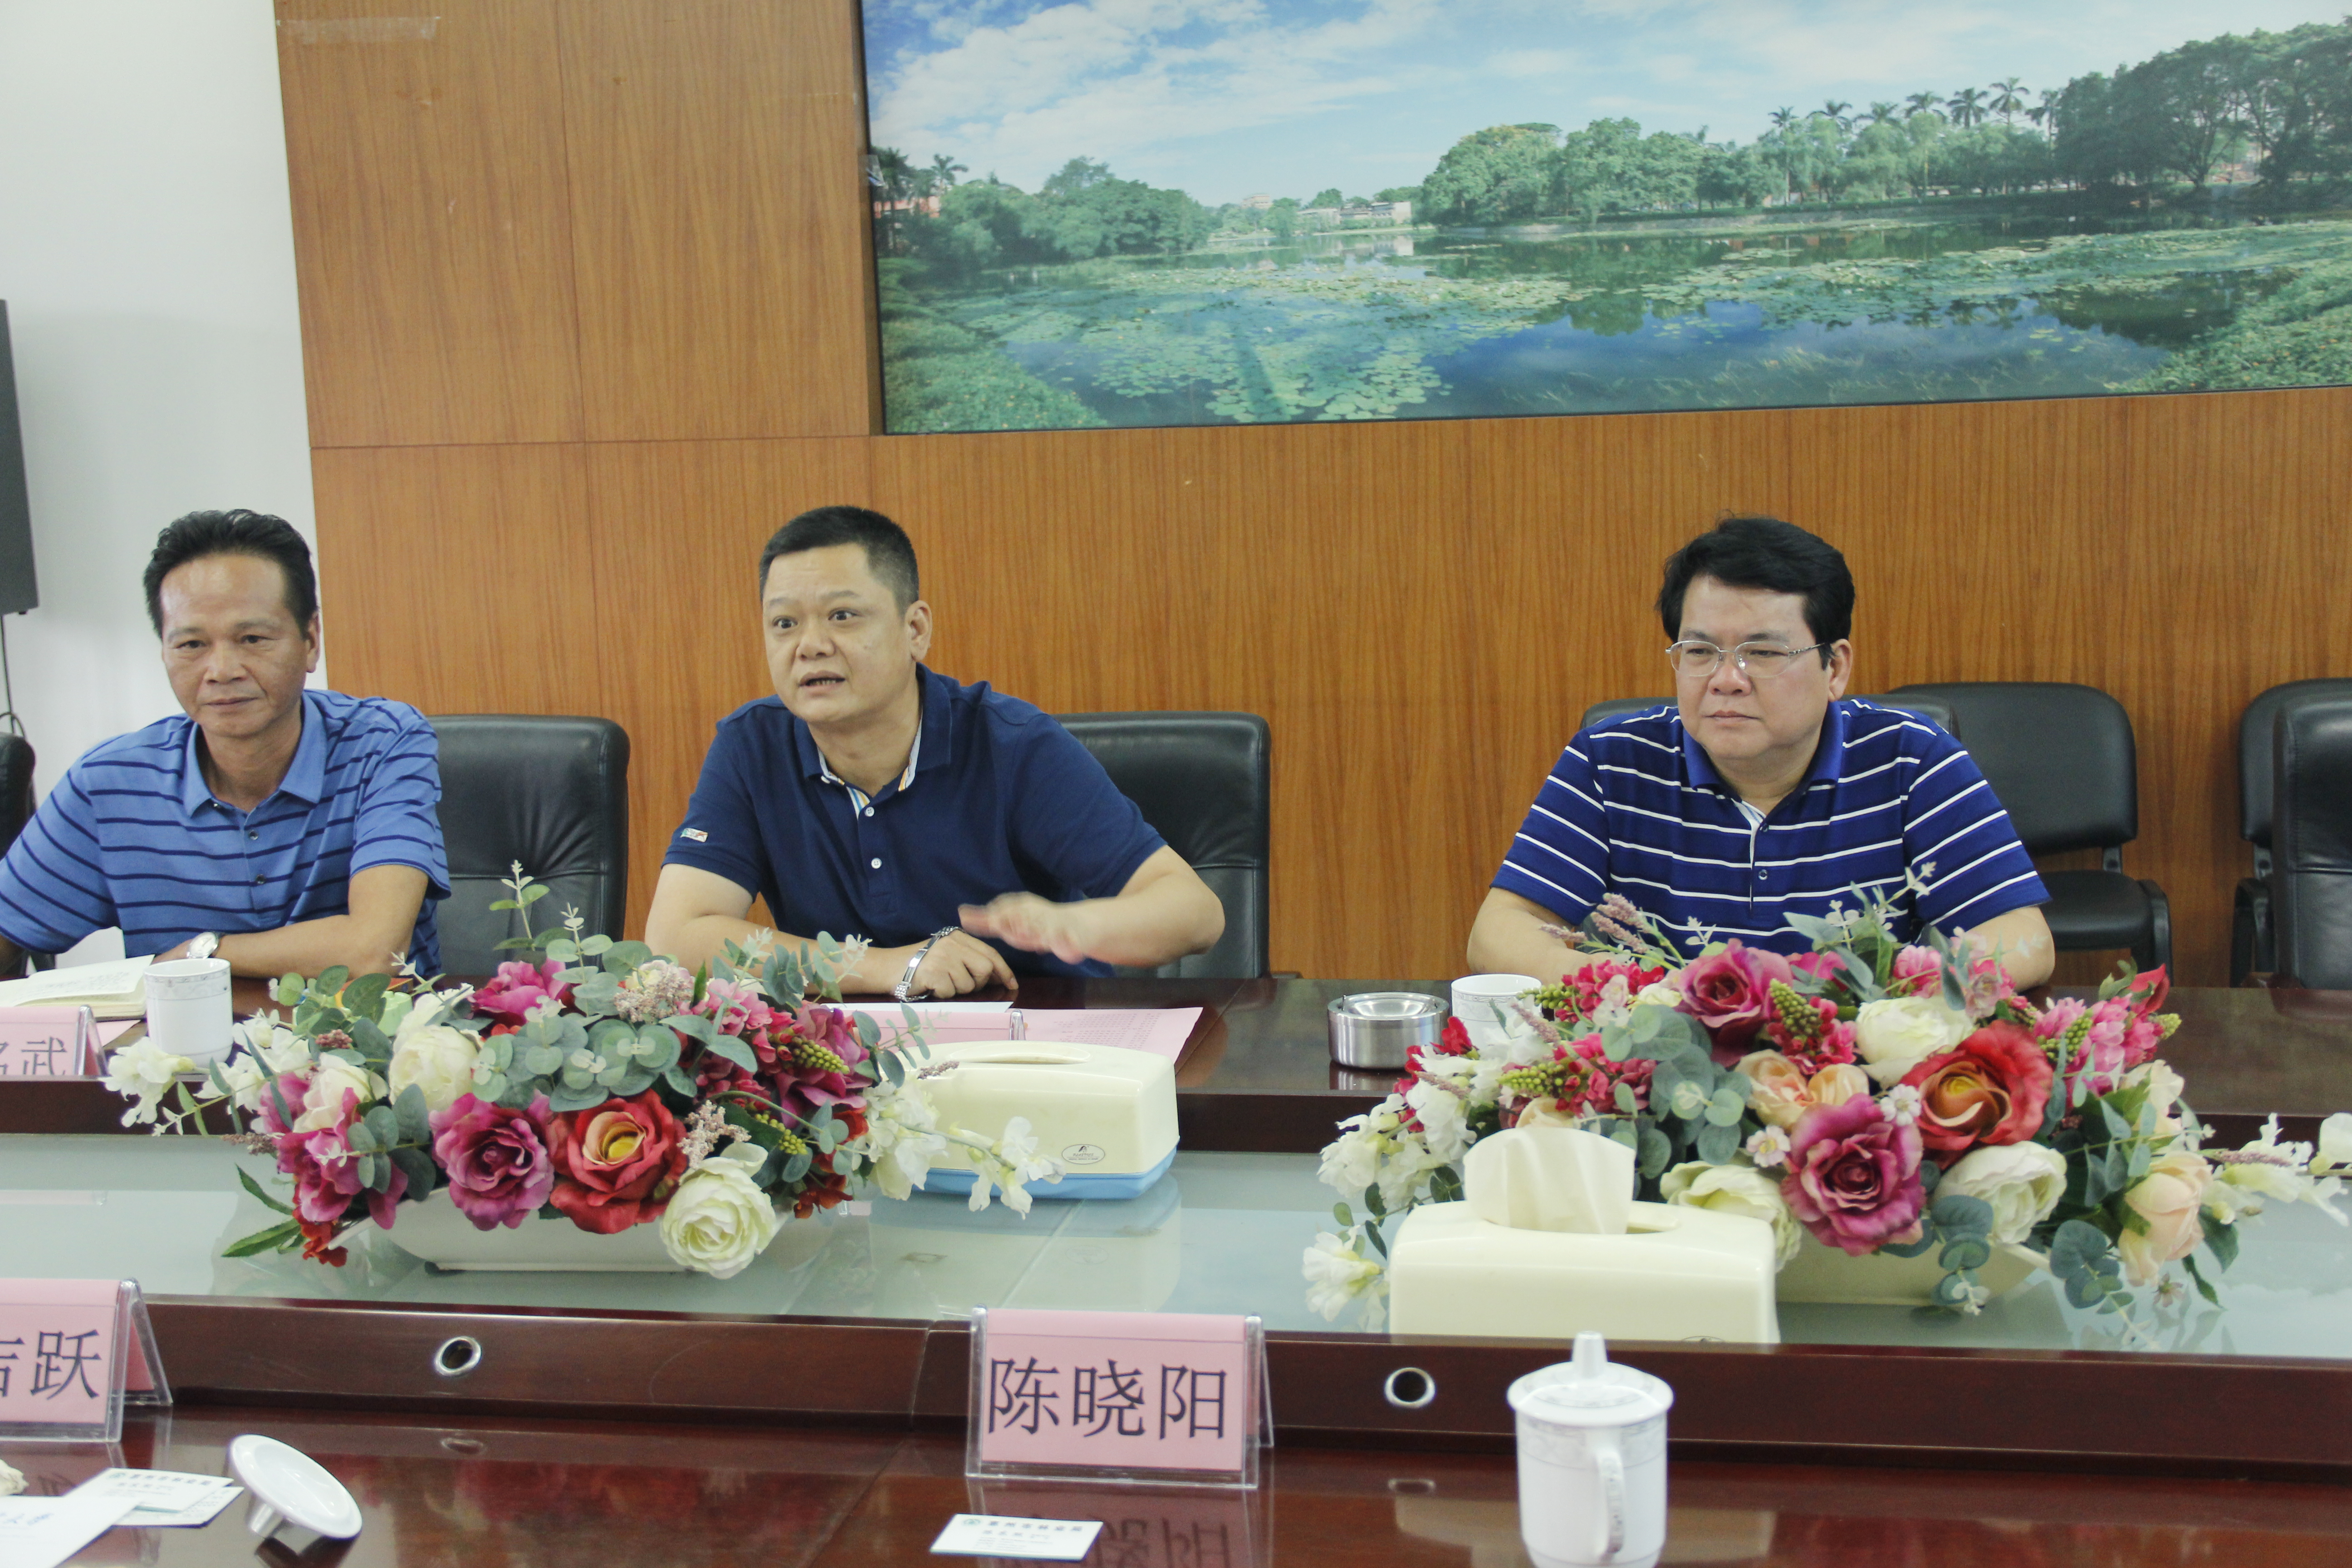 惠州市林业局来院洽谈校地合作事宜